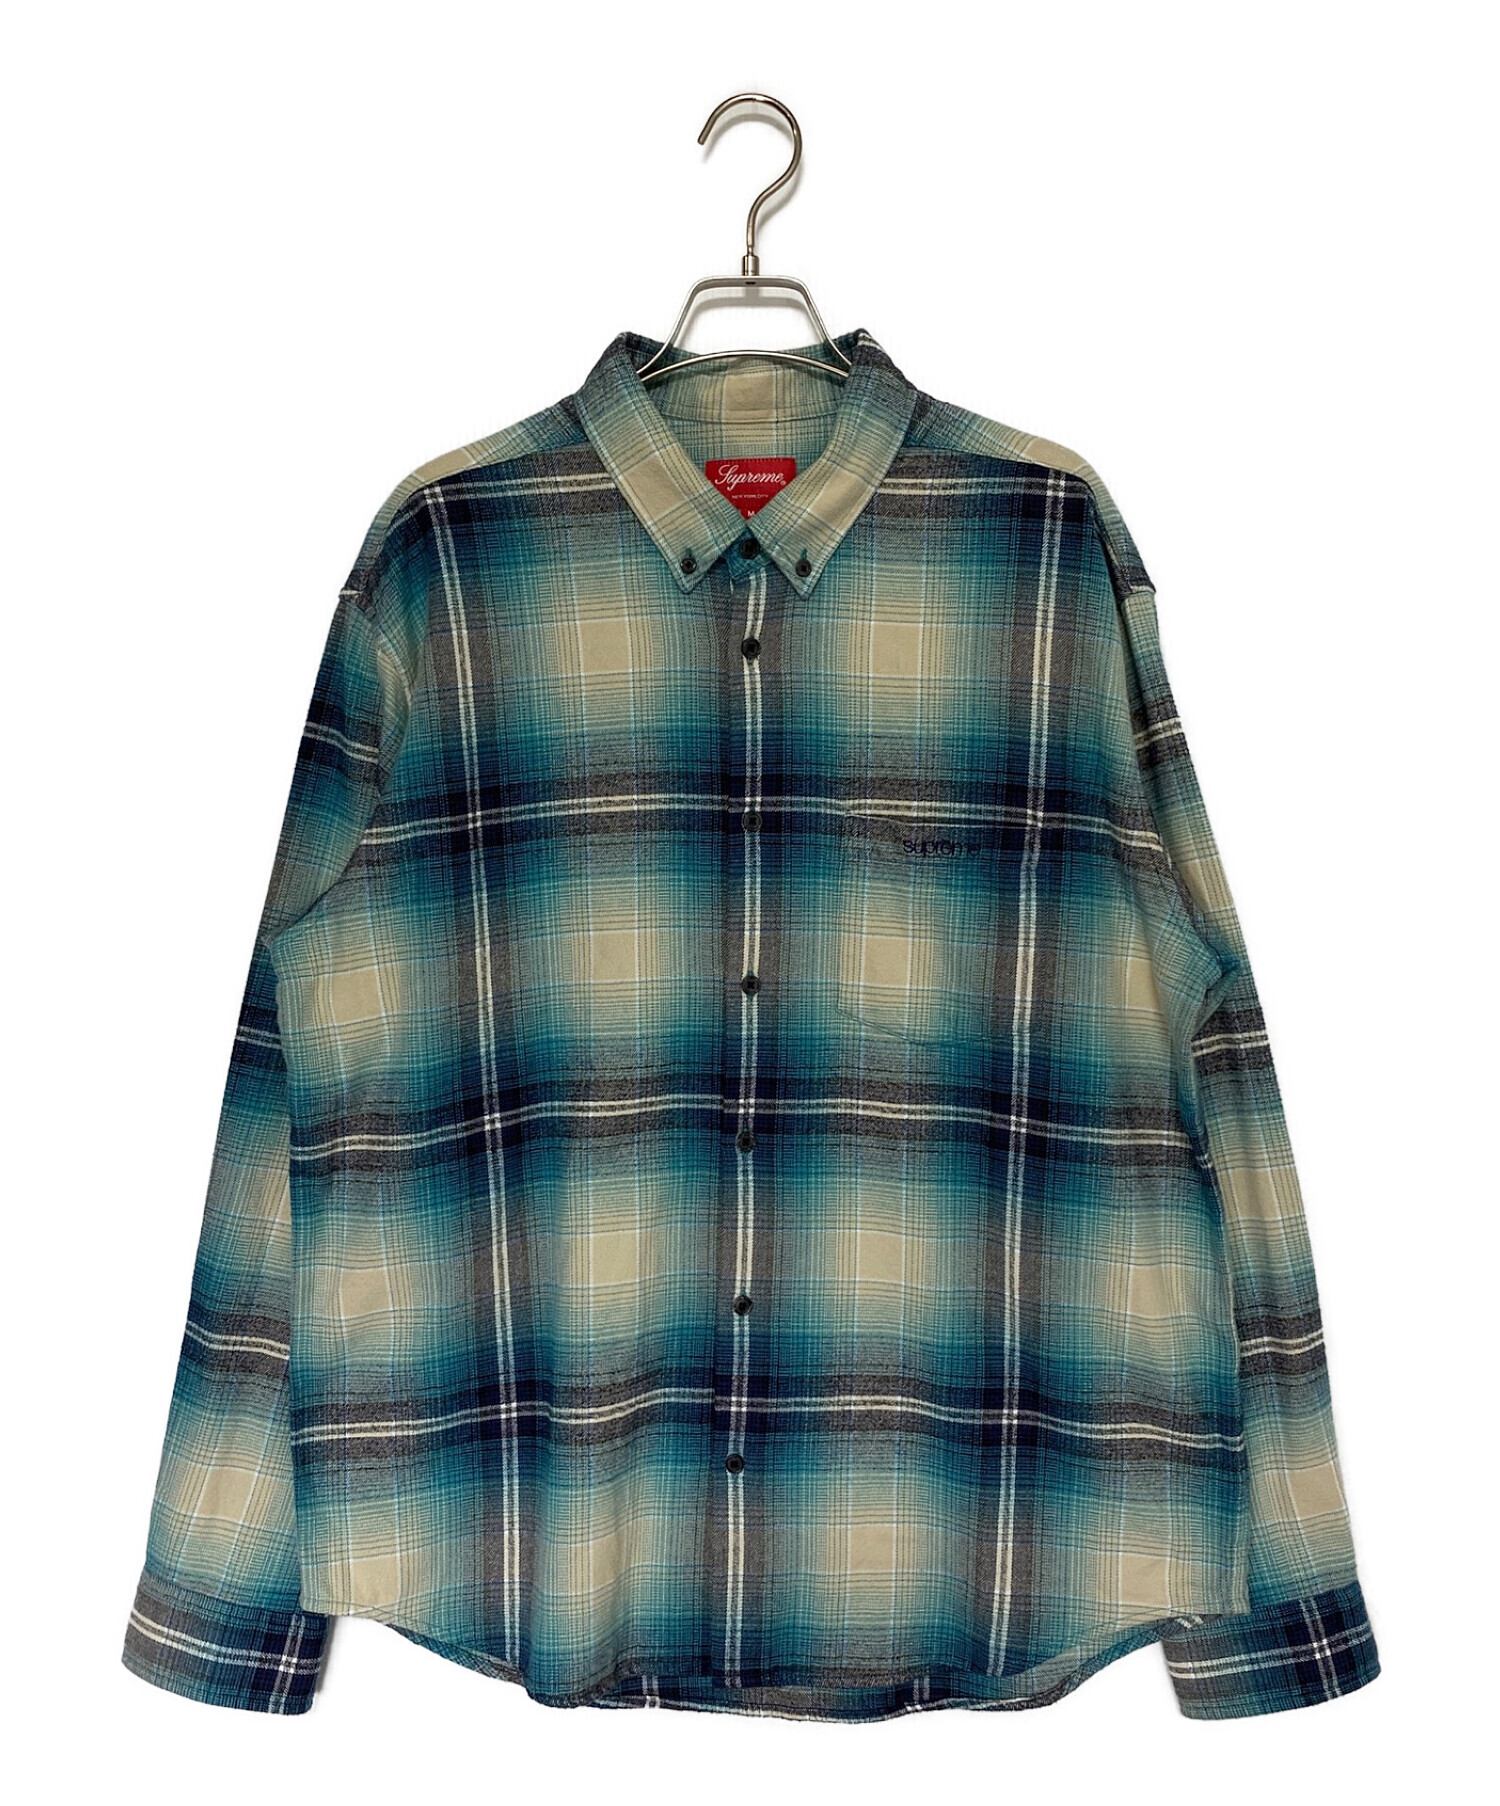 Supreme Plaid Flannel Shirt sizeM